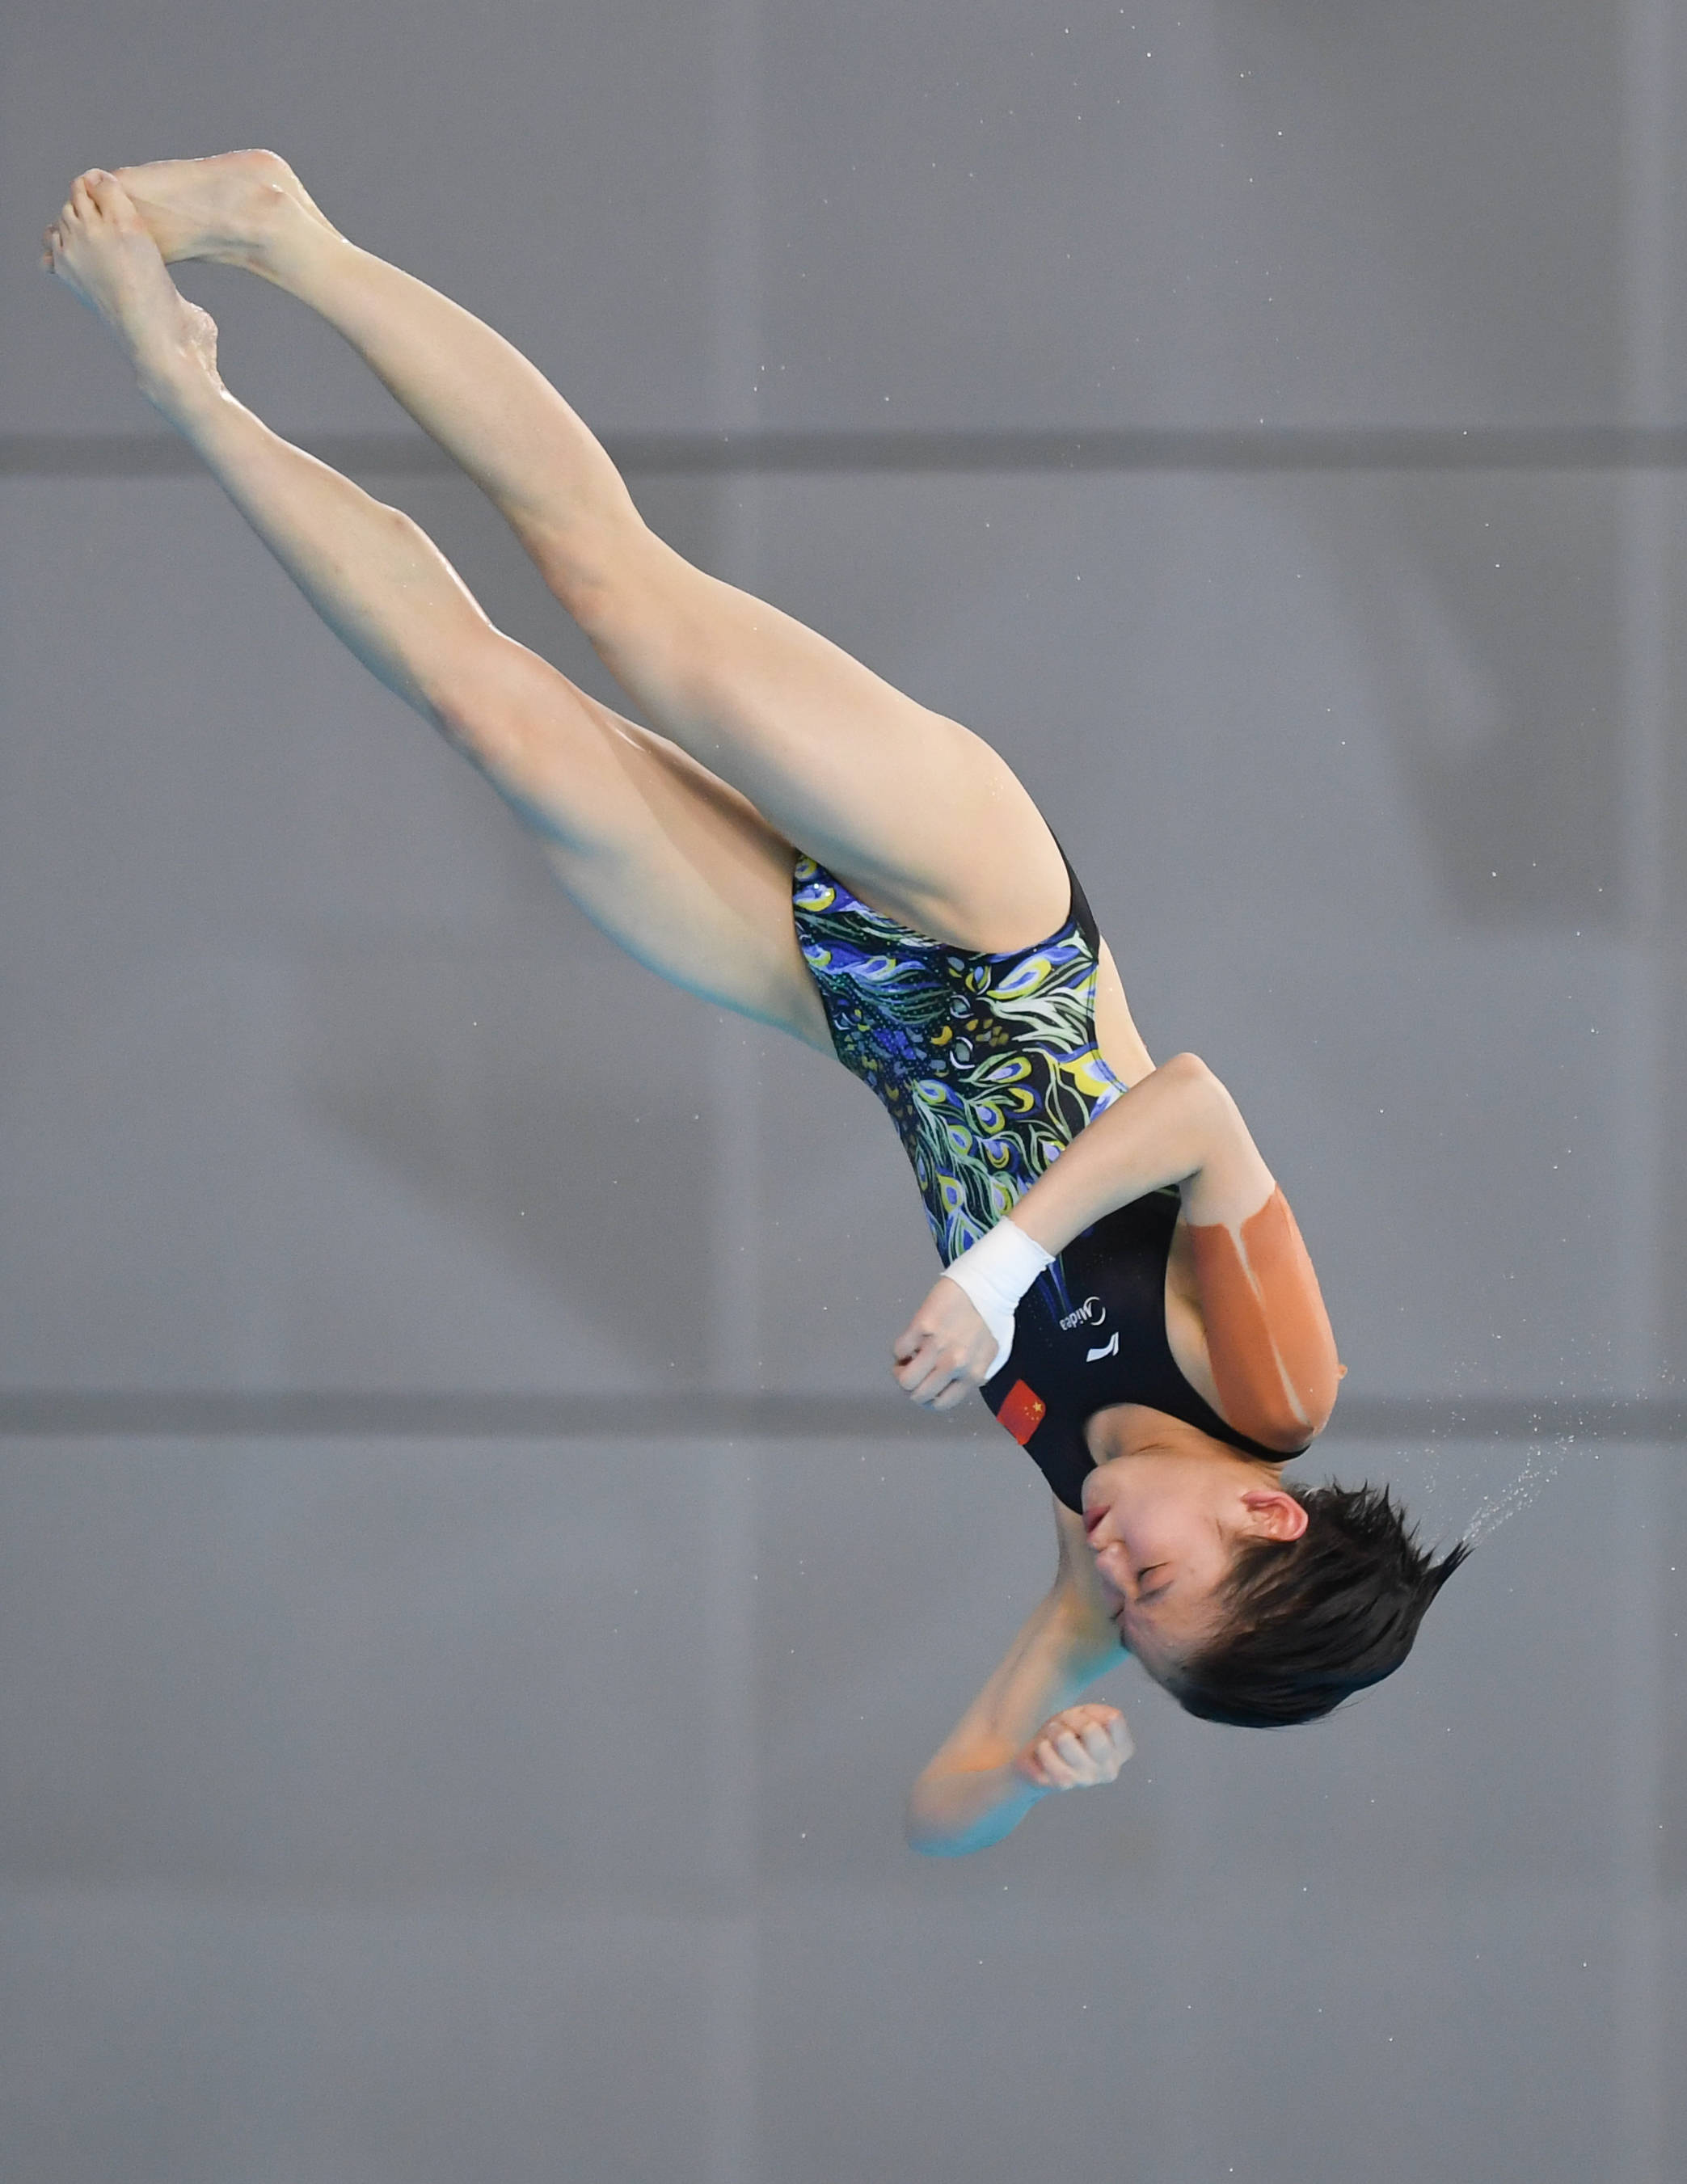 2021年跳水项目东京奥运会、 世界杯选拔赛（第二站）21日武汉开赛 - 中国日报网